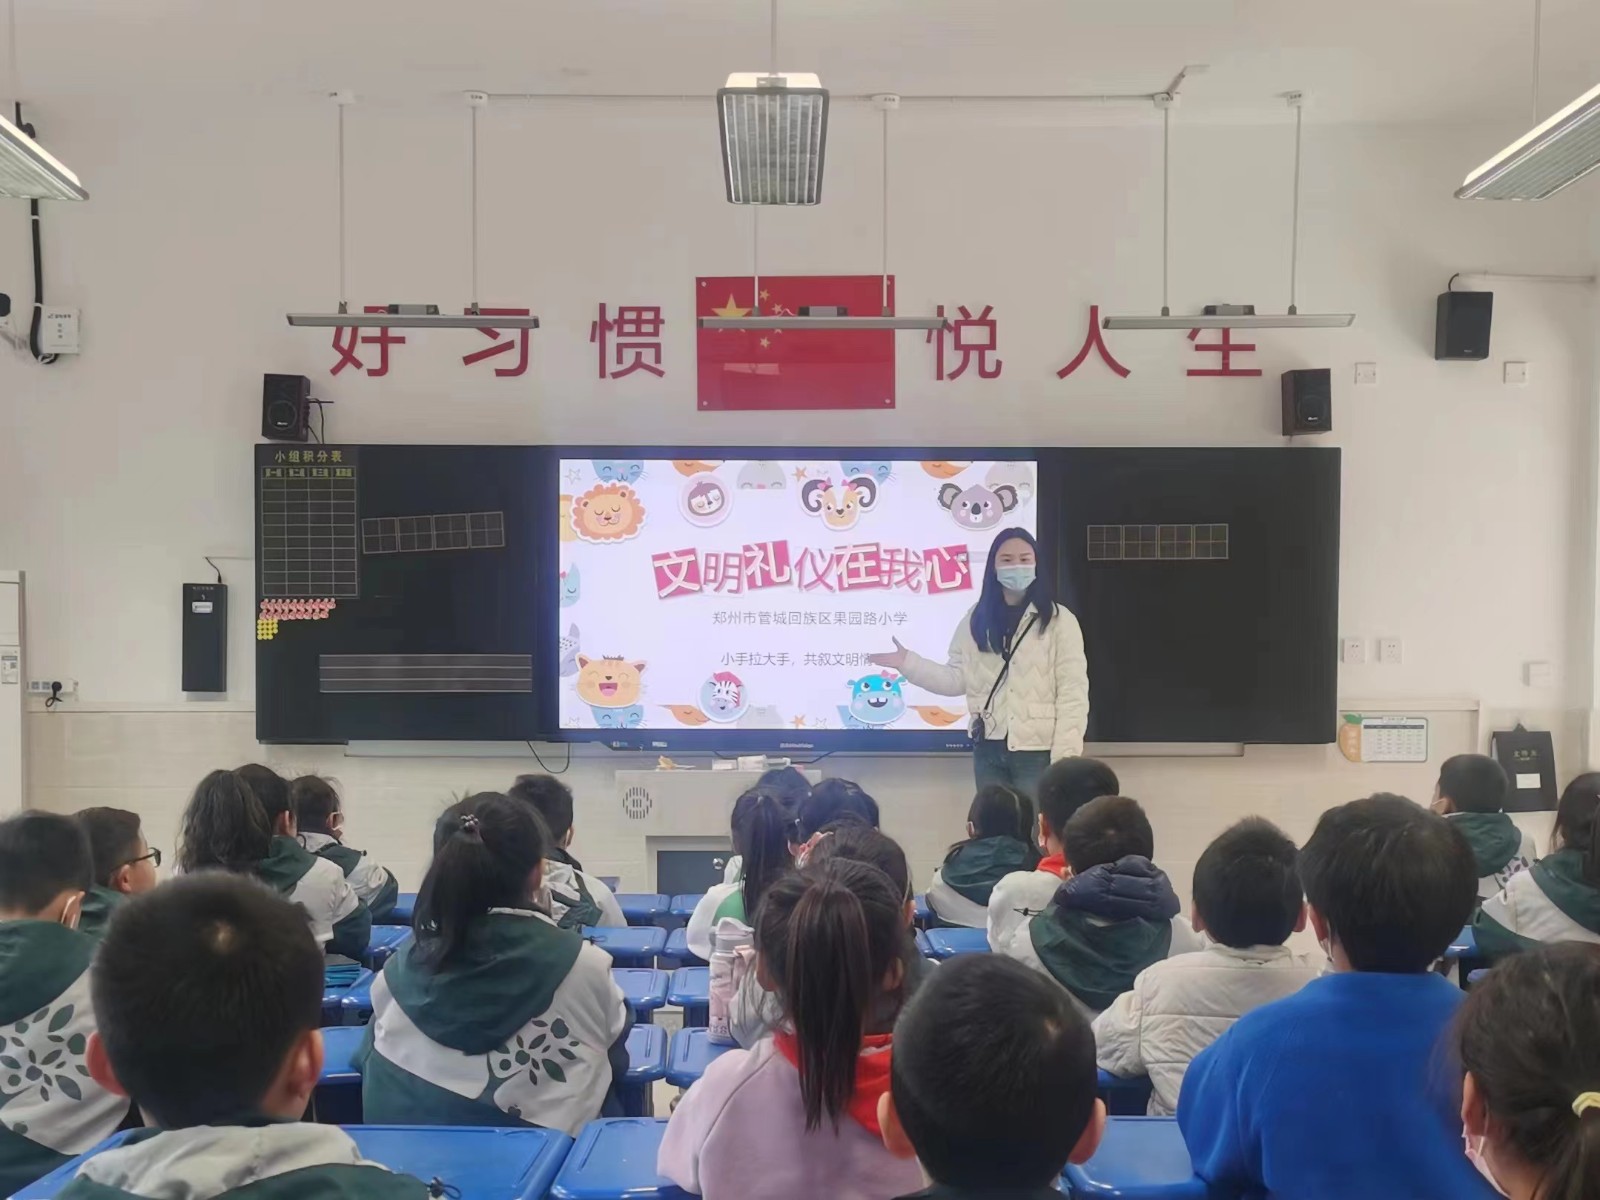 贵阳市花果园第二小学举行春季学期开学典礼-贵阳网